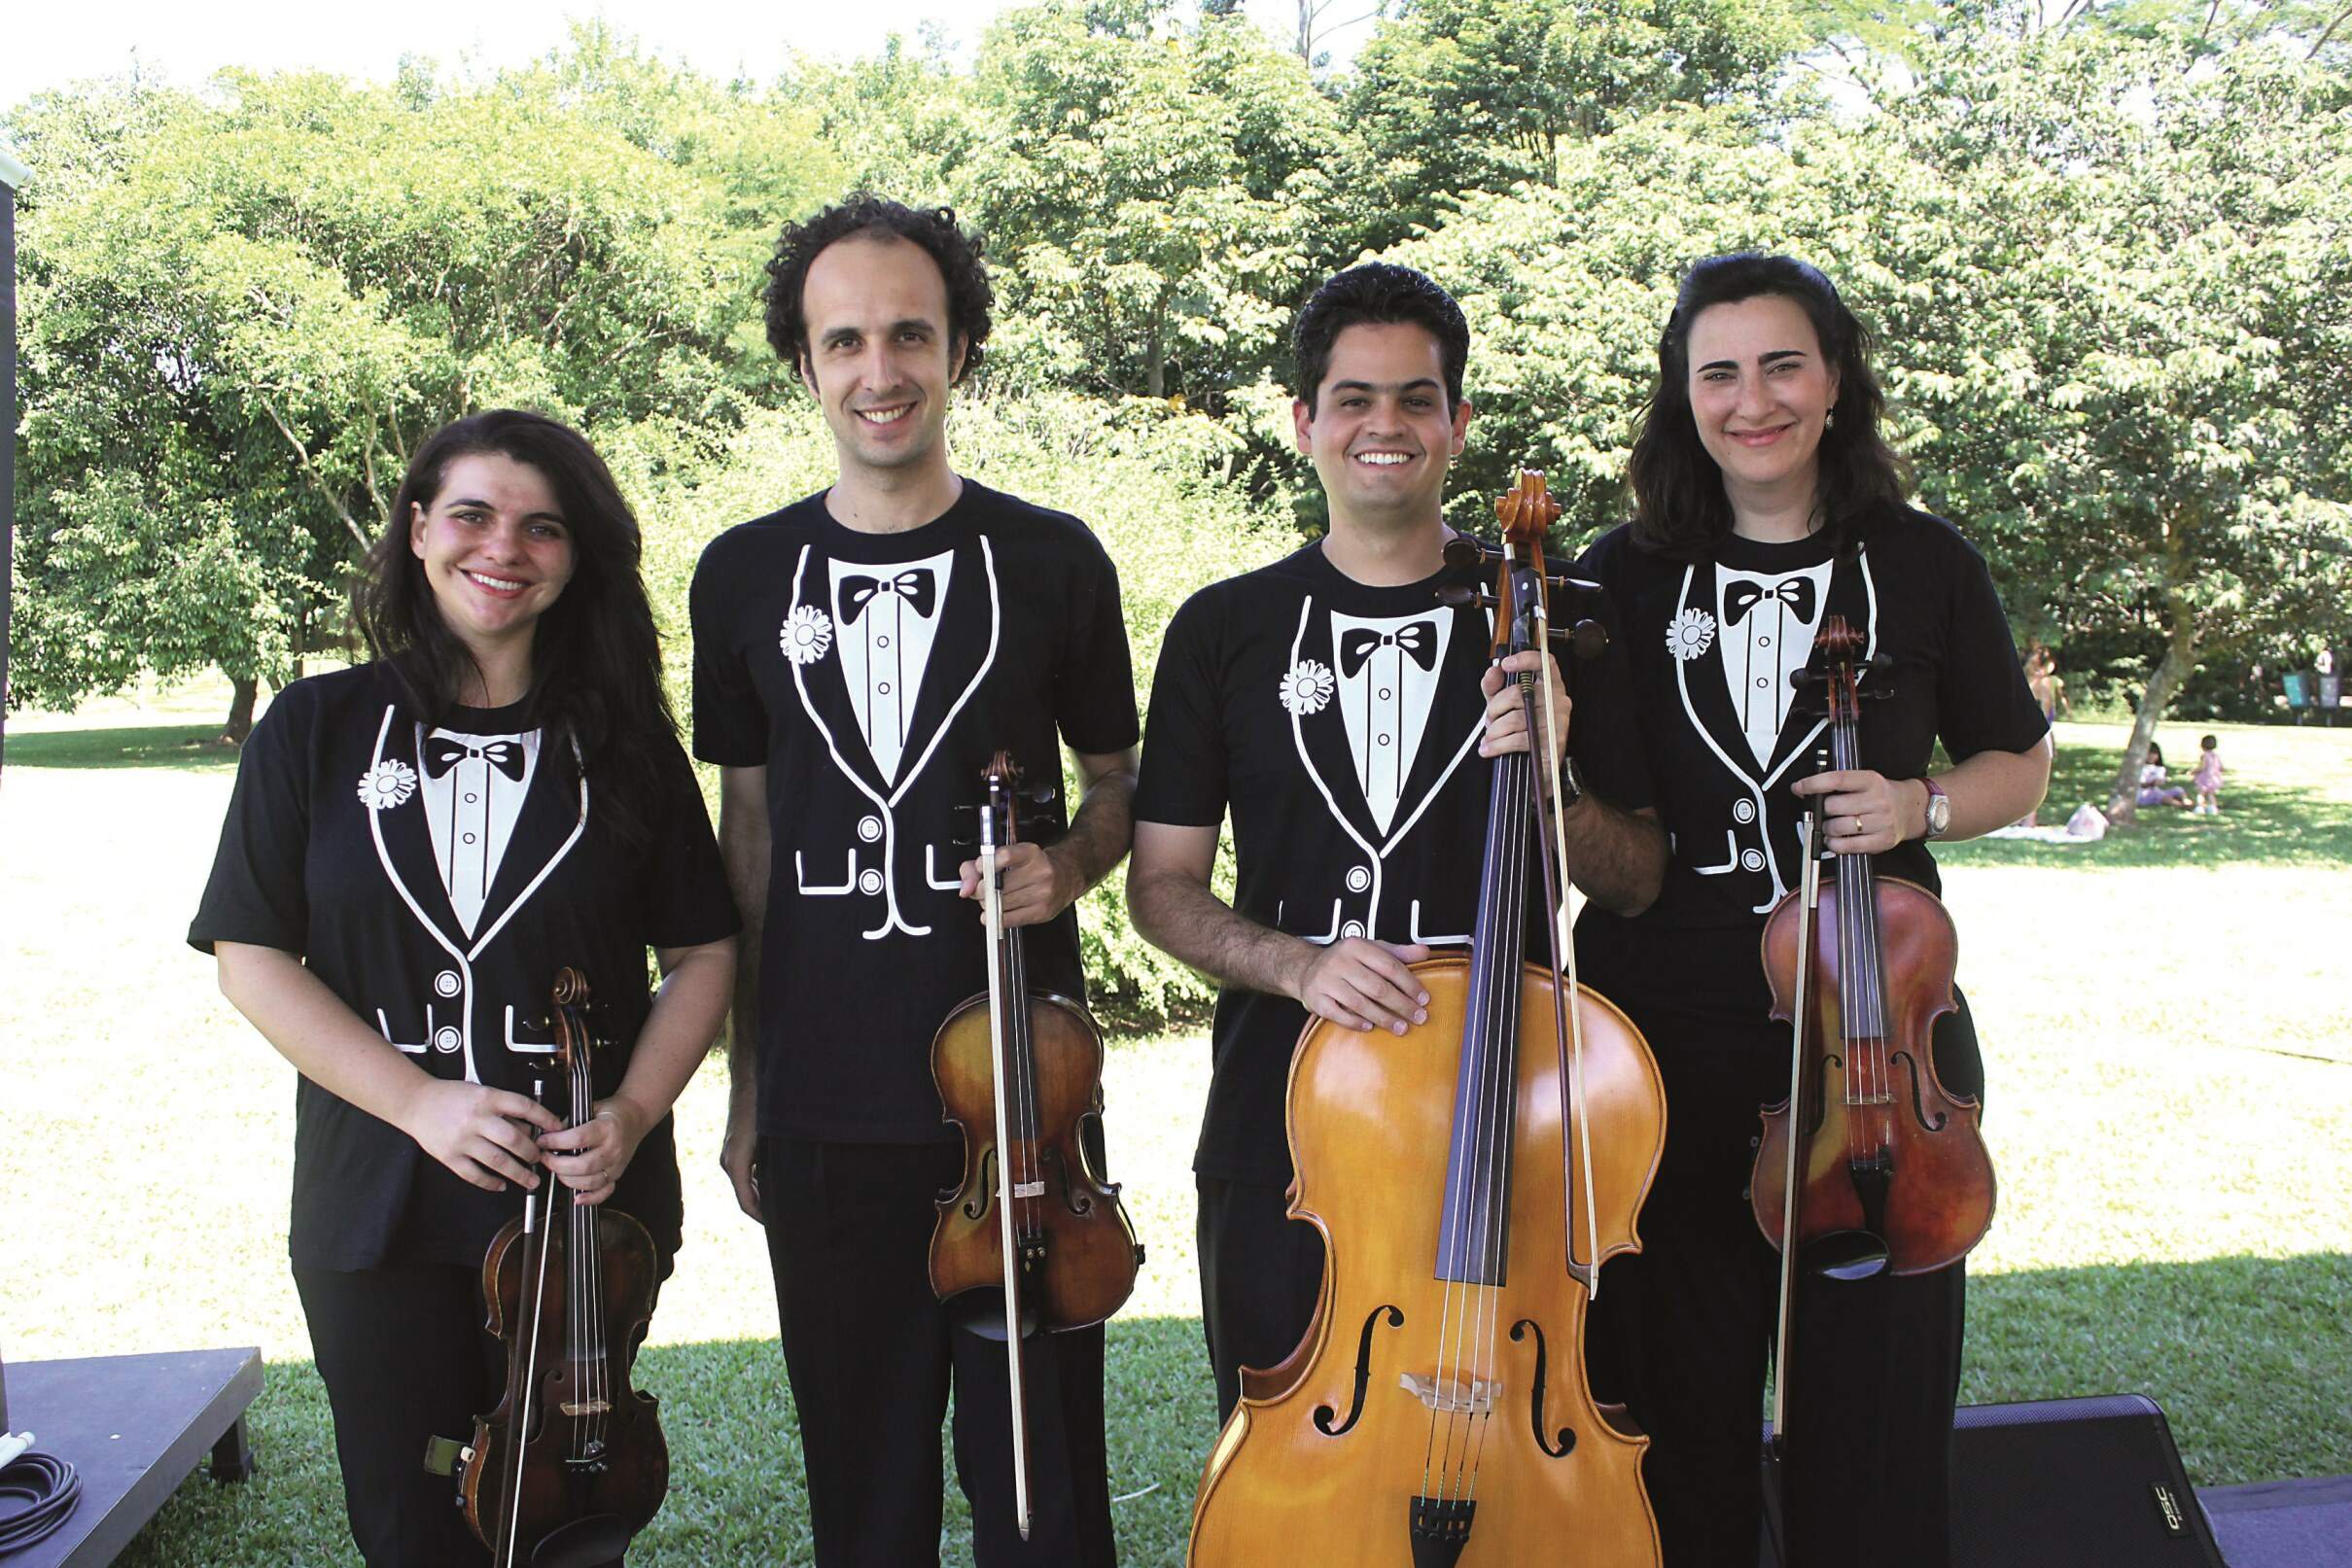 Quarteto Dell'Art toca na capela do Cruzeiro do Sul – O Liberal - O Liberal (Assinatura)